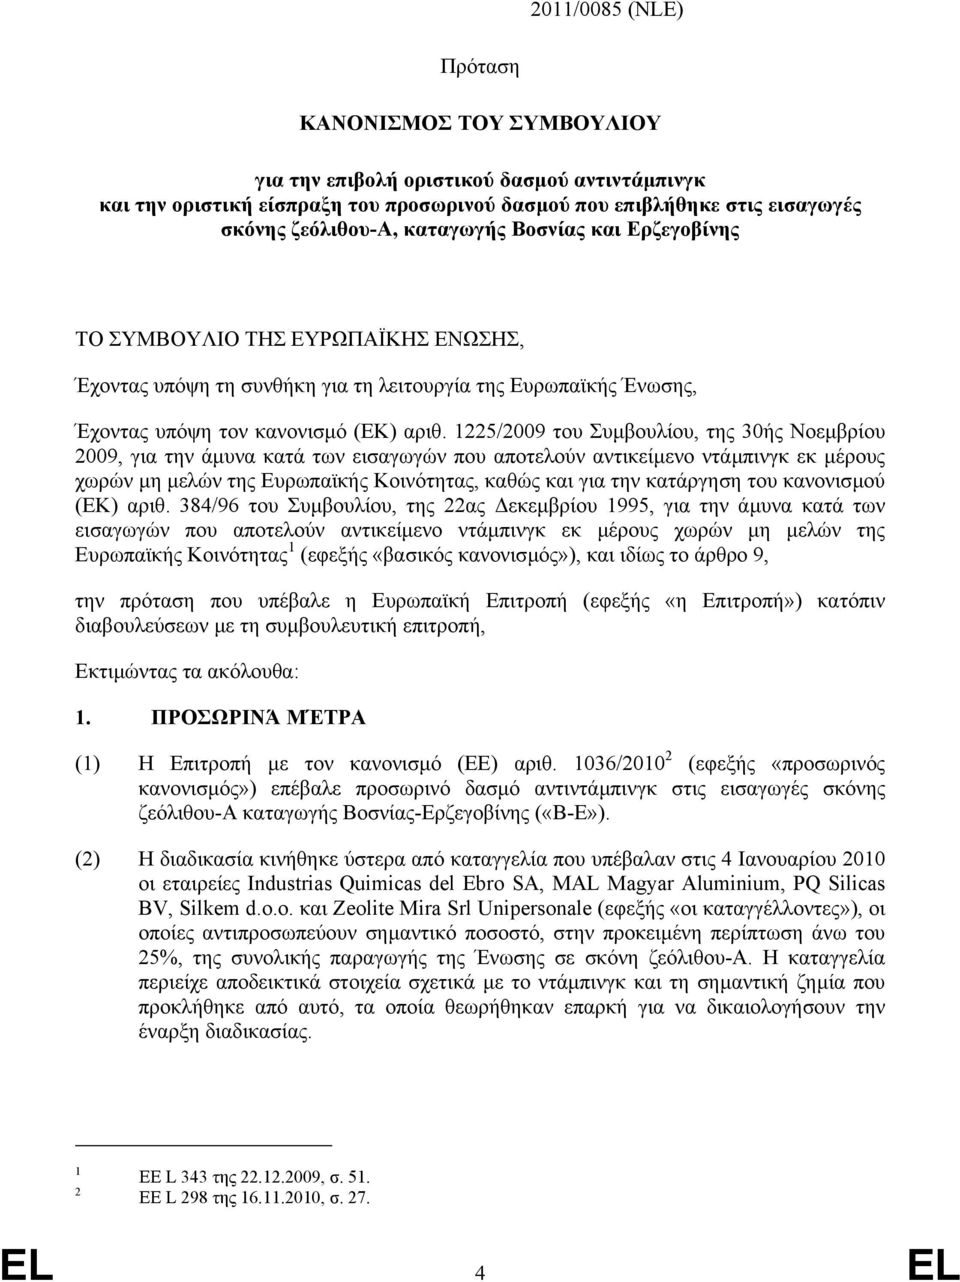 1225/2009 του Συµβουλίου, της 30ής Νοεµβρίου 2009, για την άµυνα κατά των εισαγωγών που αποτελούν αντικείµενο ντάµπινγκ εκ µέρους χωρών µη µελών της Ευρωπαϊκής Κοινότητας, καθώς και για την κατάργηση